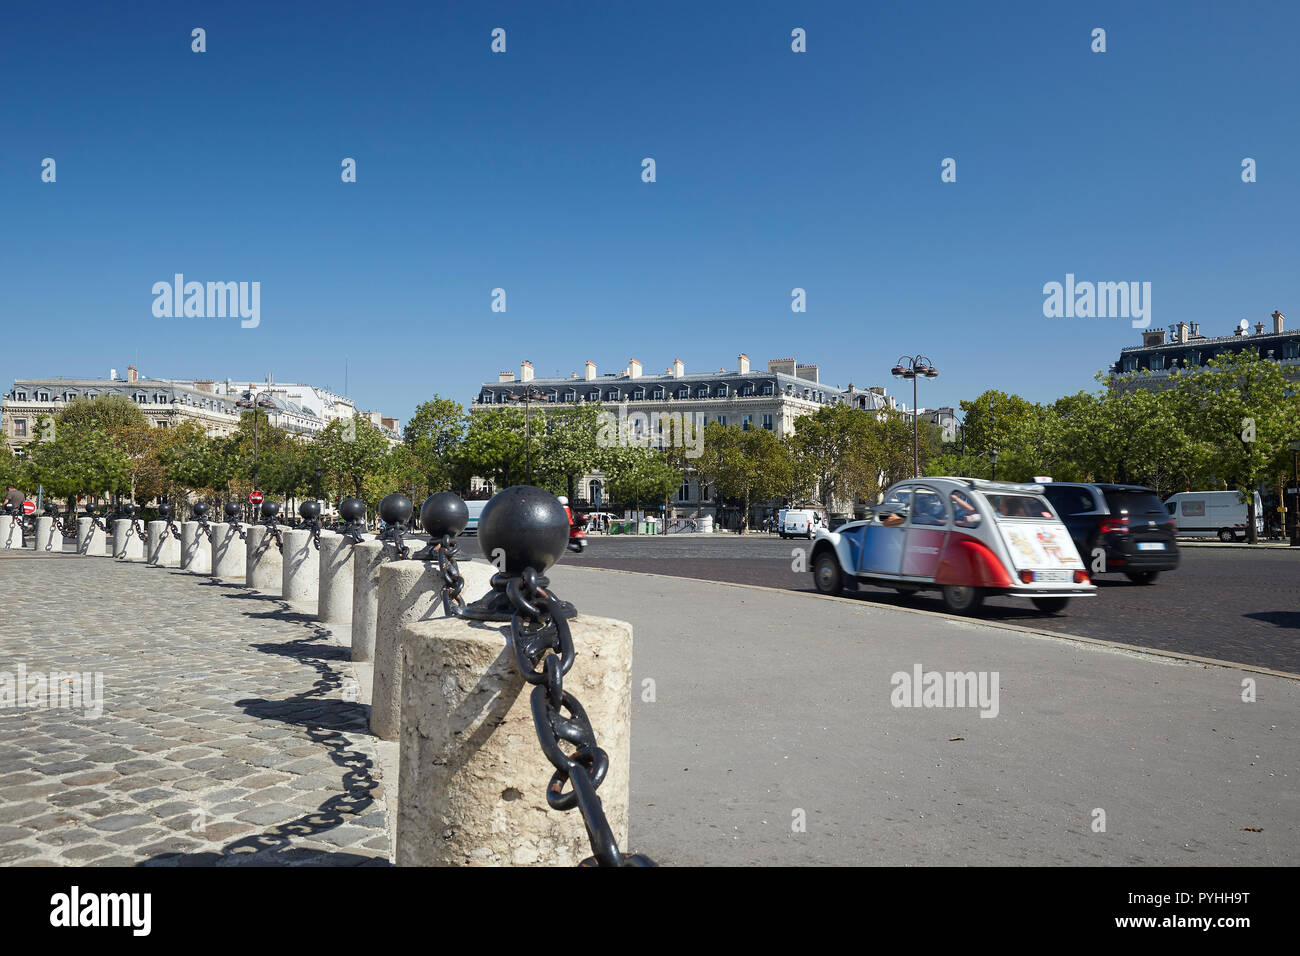 Parigi, Ile-de-France, Francia - Vista dalla Place Charles-de-Gaulle alla grande città del traffico e ai magnifici palazzi che la linea della piazza. Foto Stock